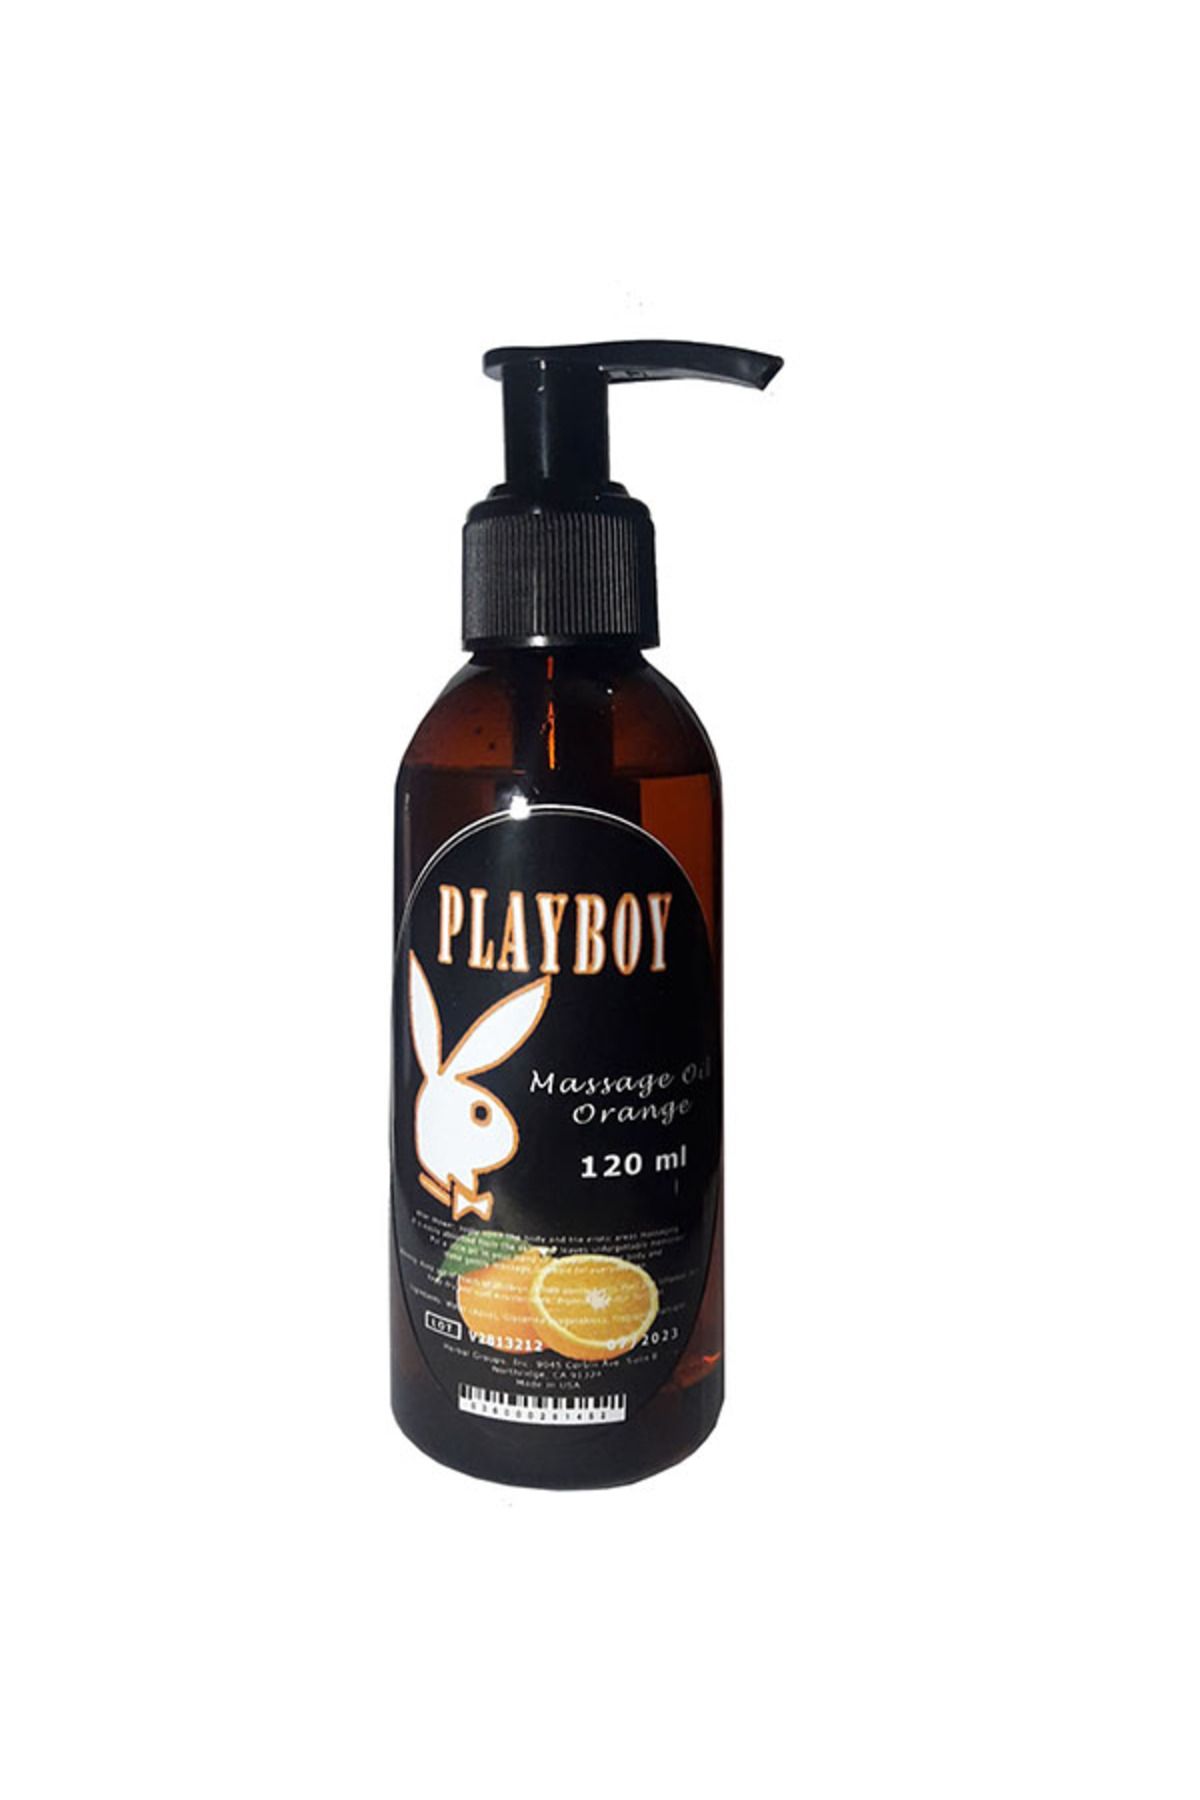 Playboy Portakal Aromalı Vücut Masaj Yağı 120 ml